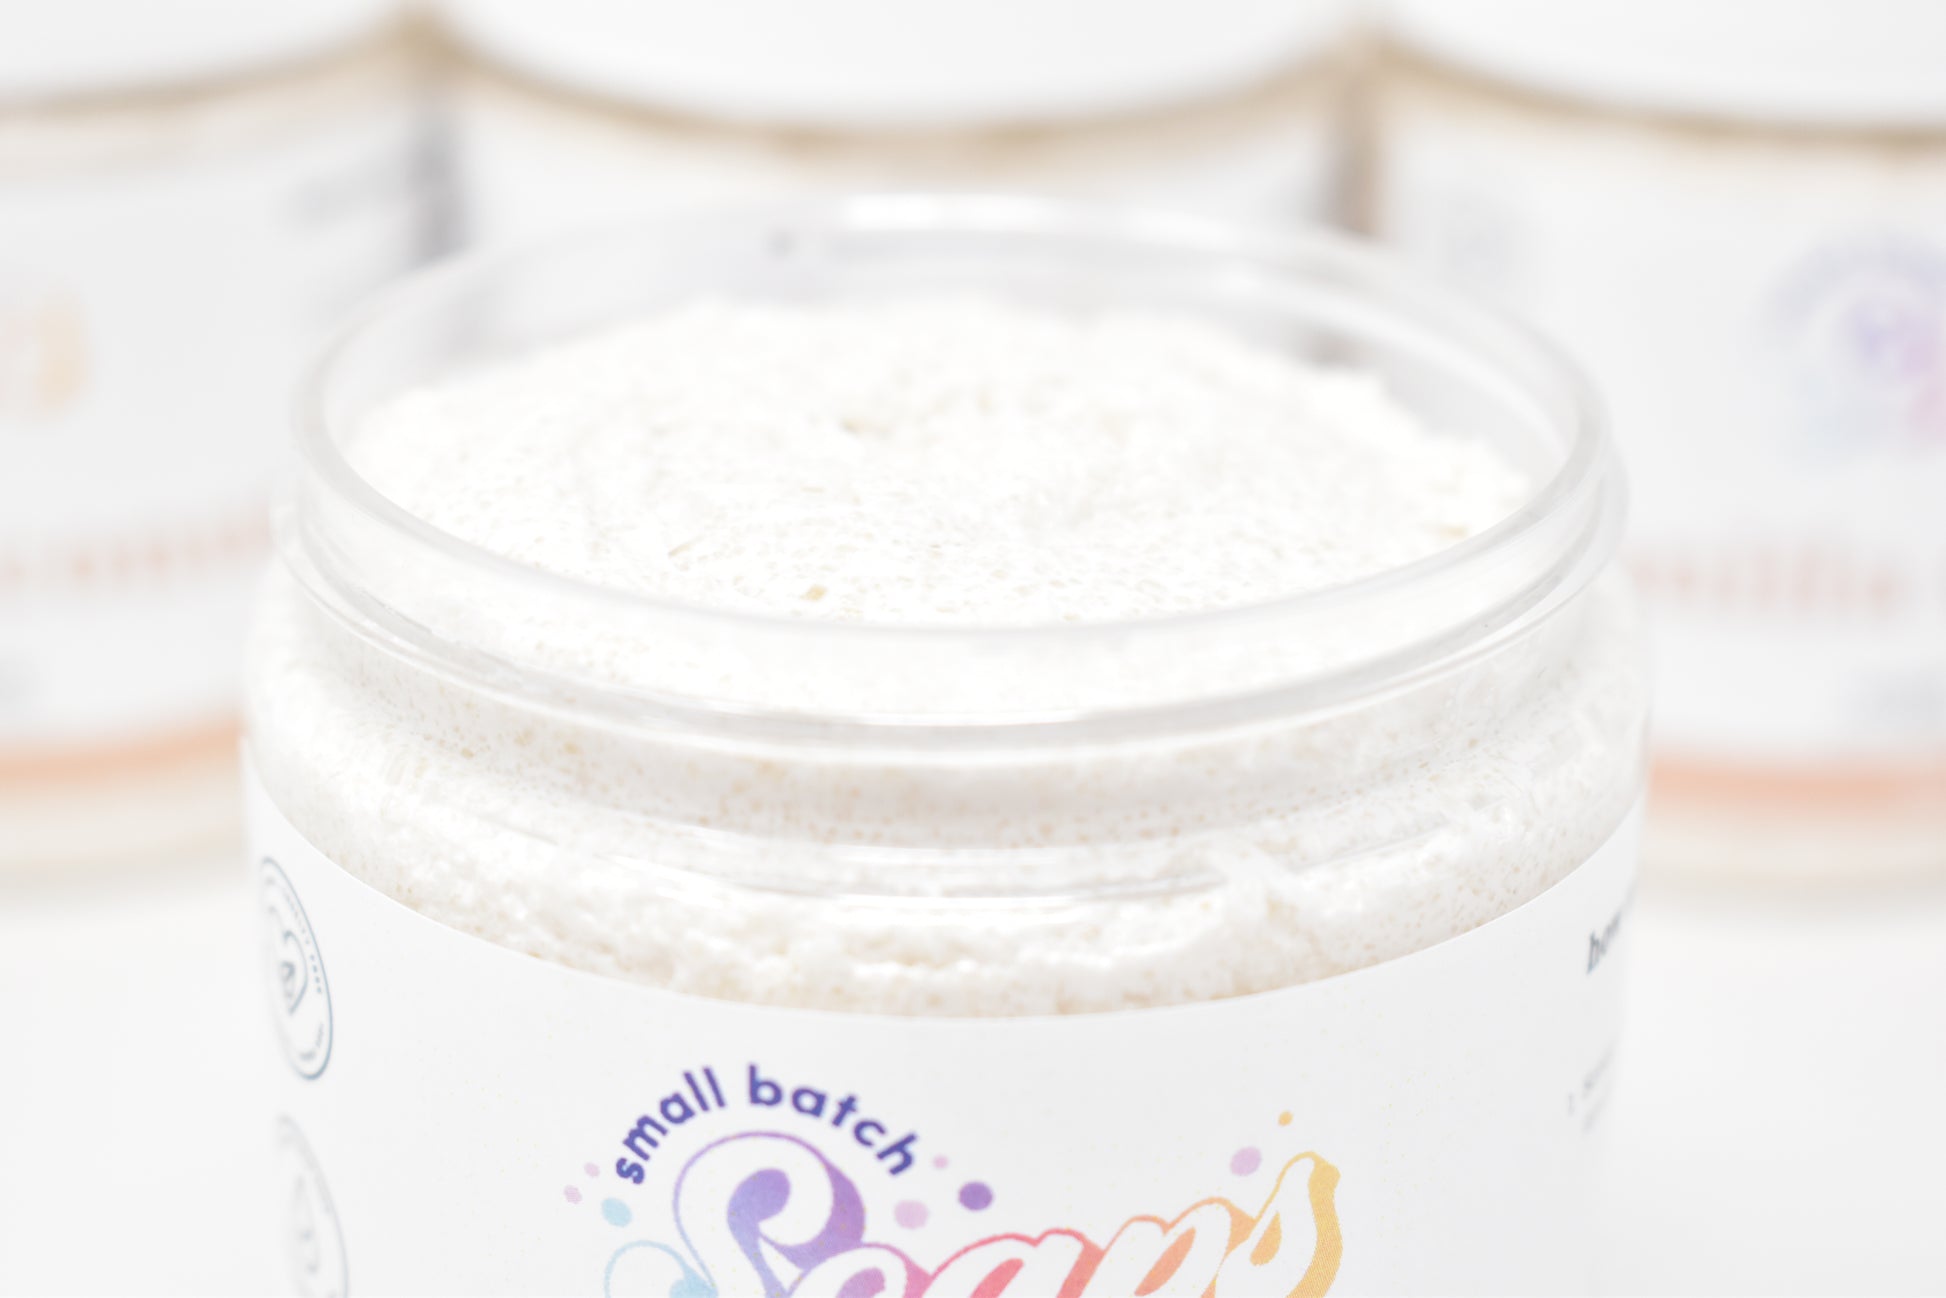 Vanilla Coconut Sugar Scrub - Small Batch Soaps